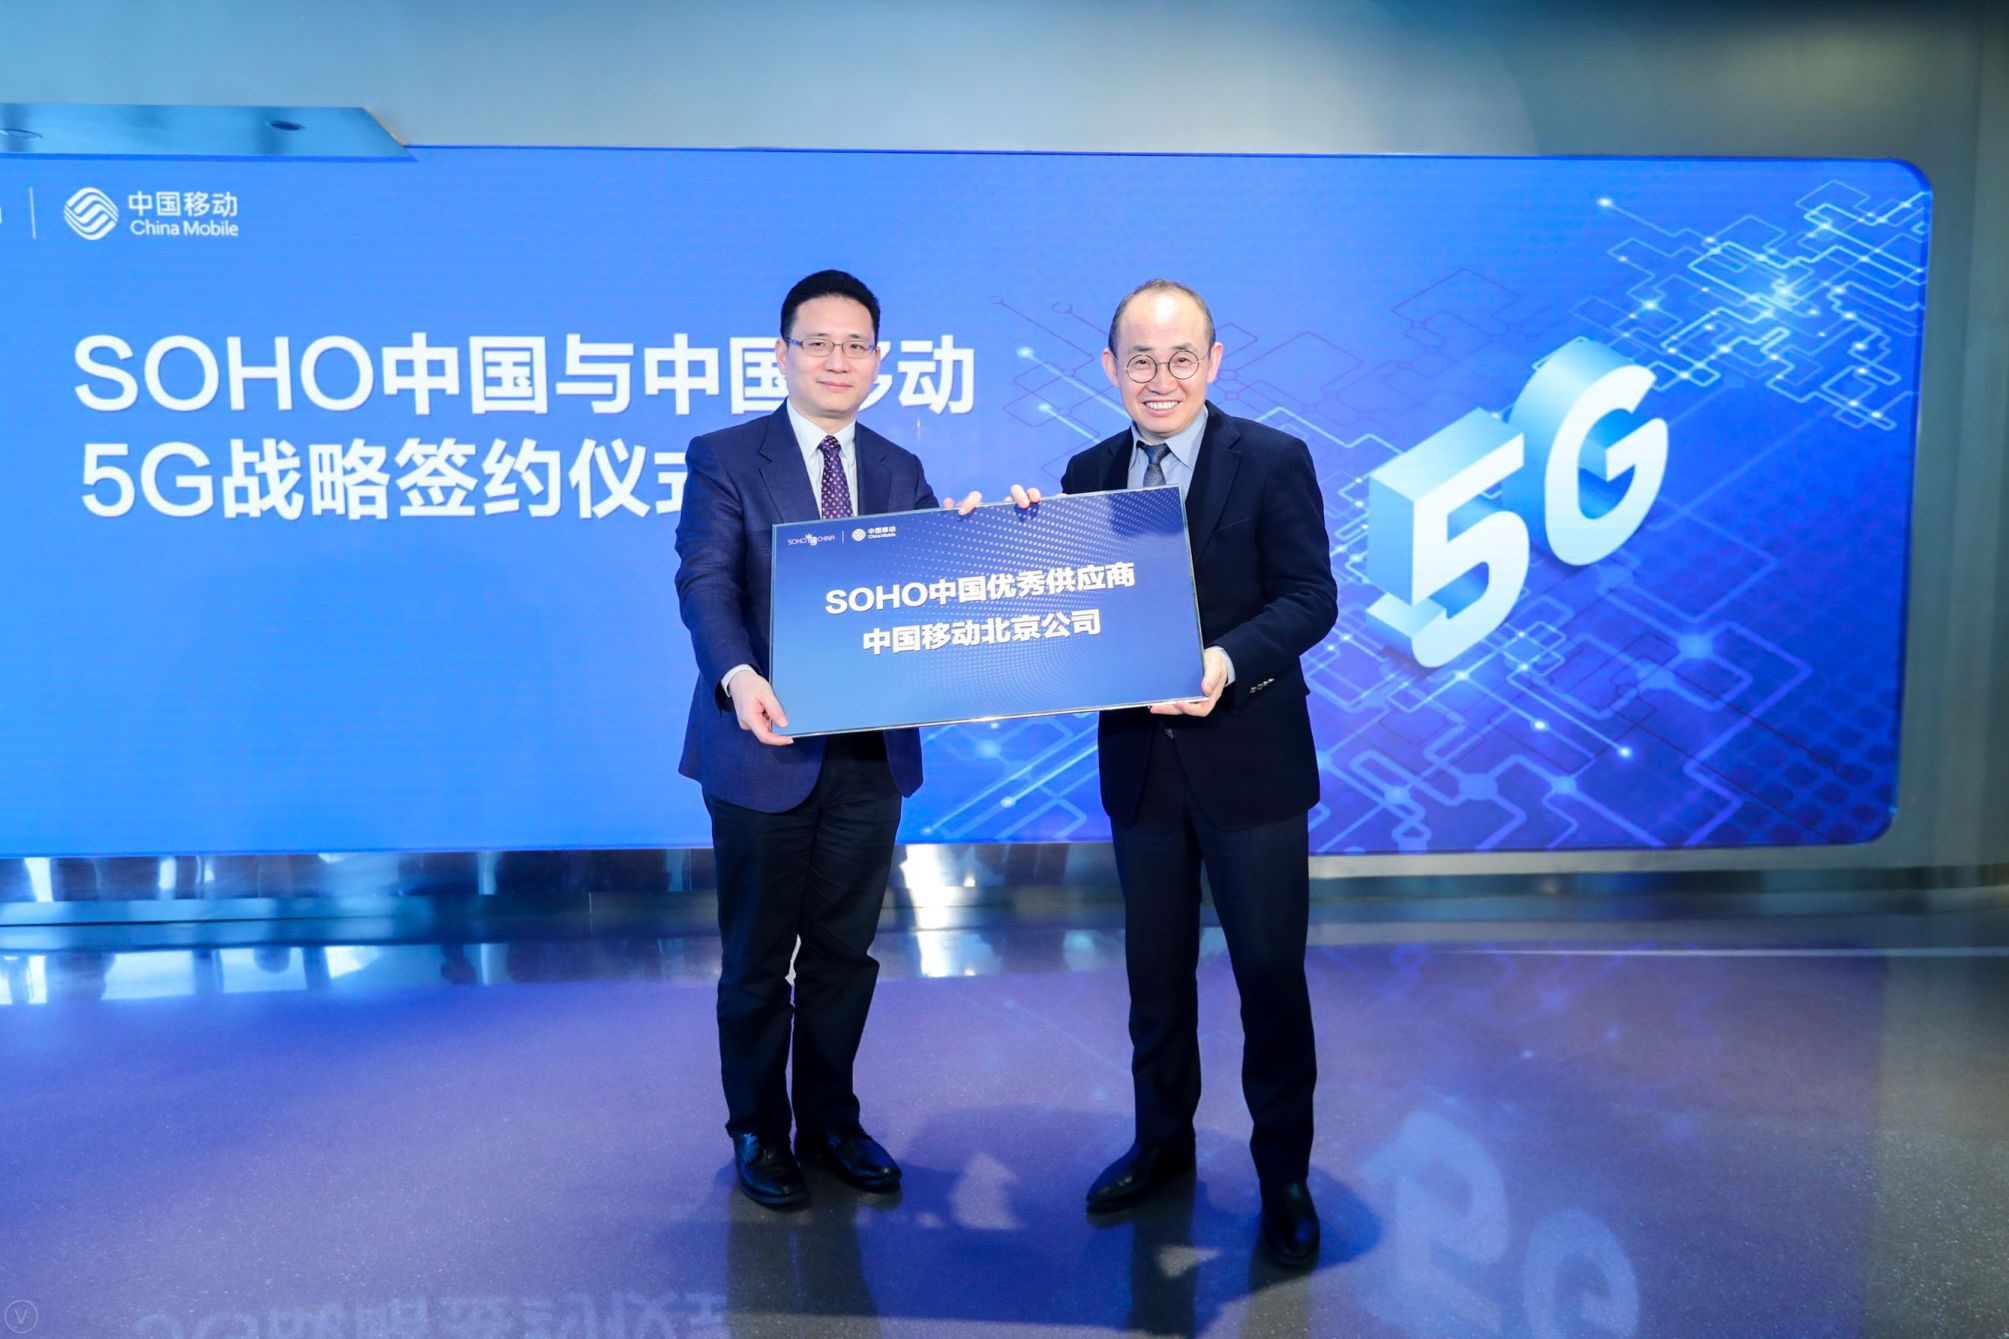 北京移动与SOHO中国签5G战略协议 启动智慧楼宇建设